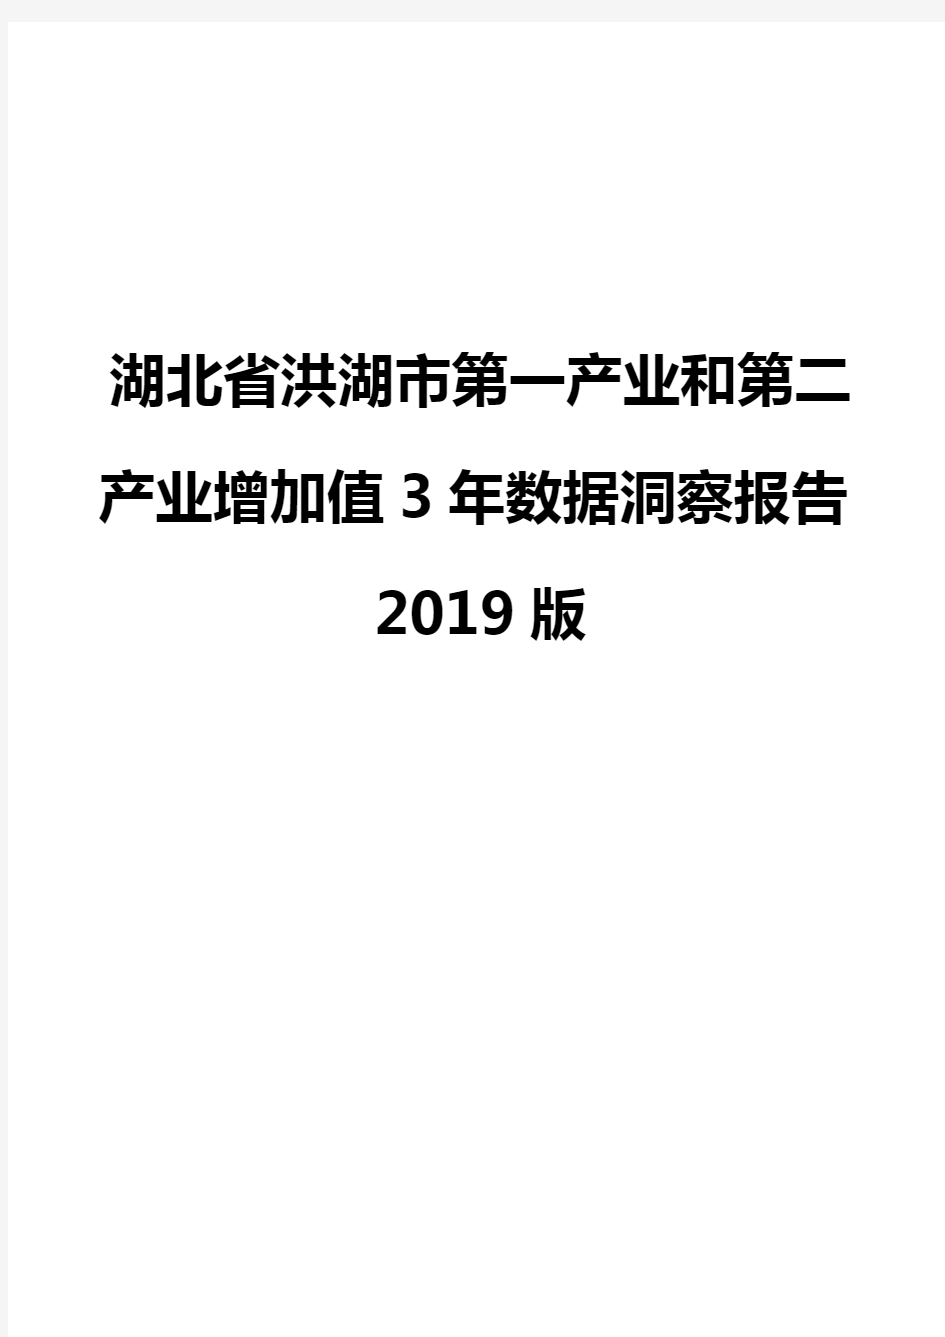 湖北省洪湖市第一产业和第二产业增加值3年数据洞察报告2019版